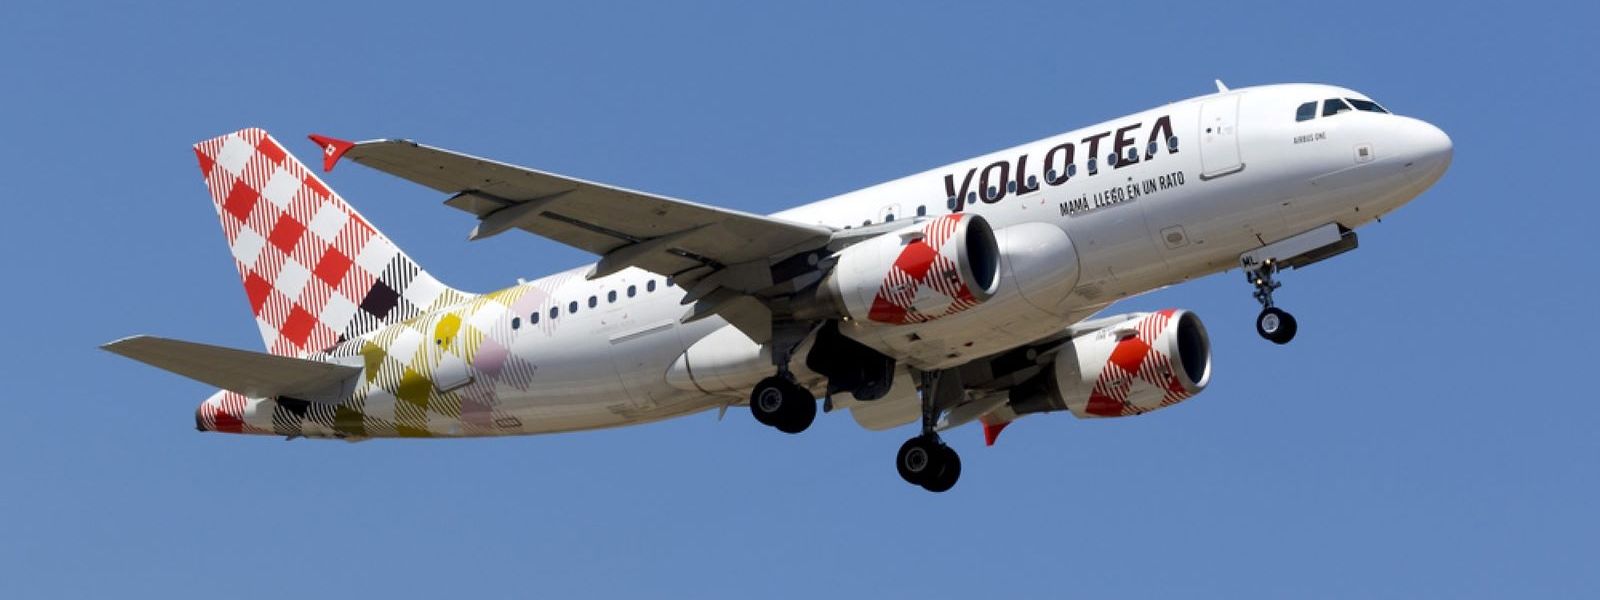 Die Fluglinie Volotea entschuldigte sich bei den Passagieren für die Unannehmlichkeiten.